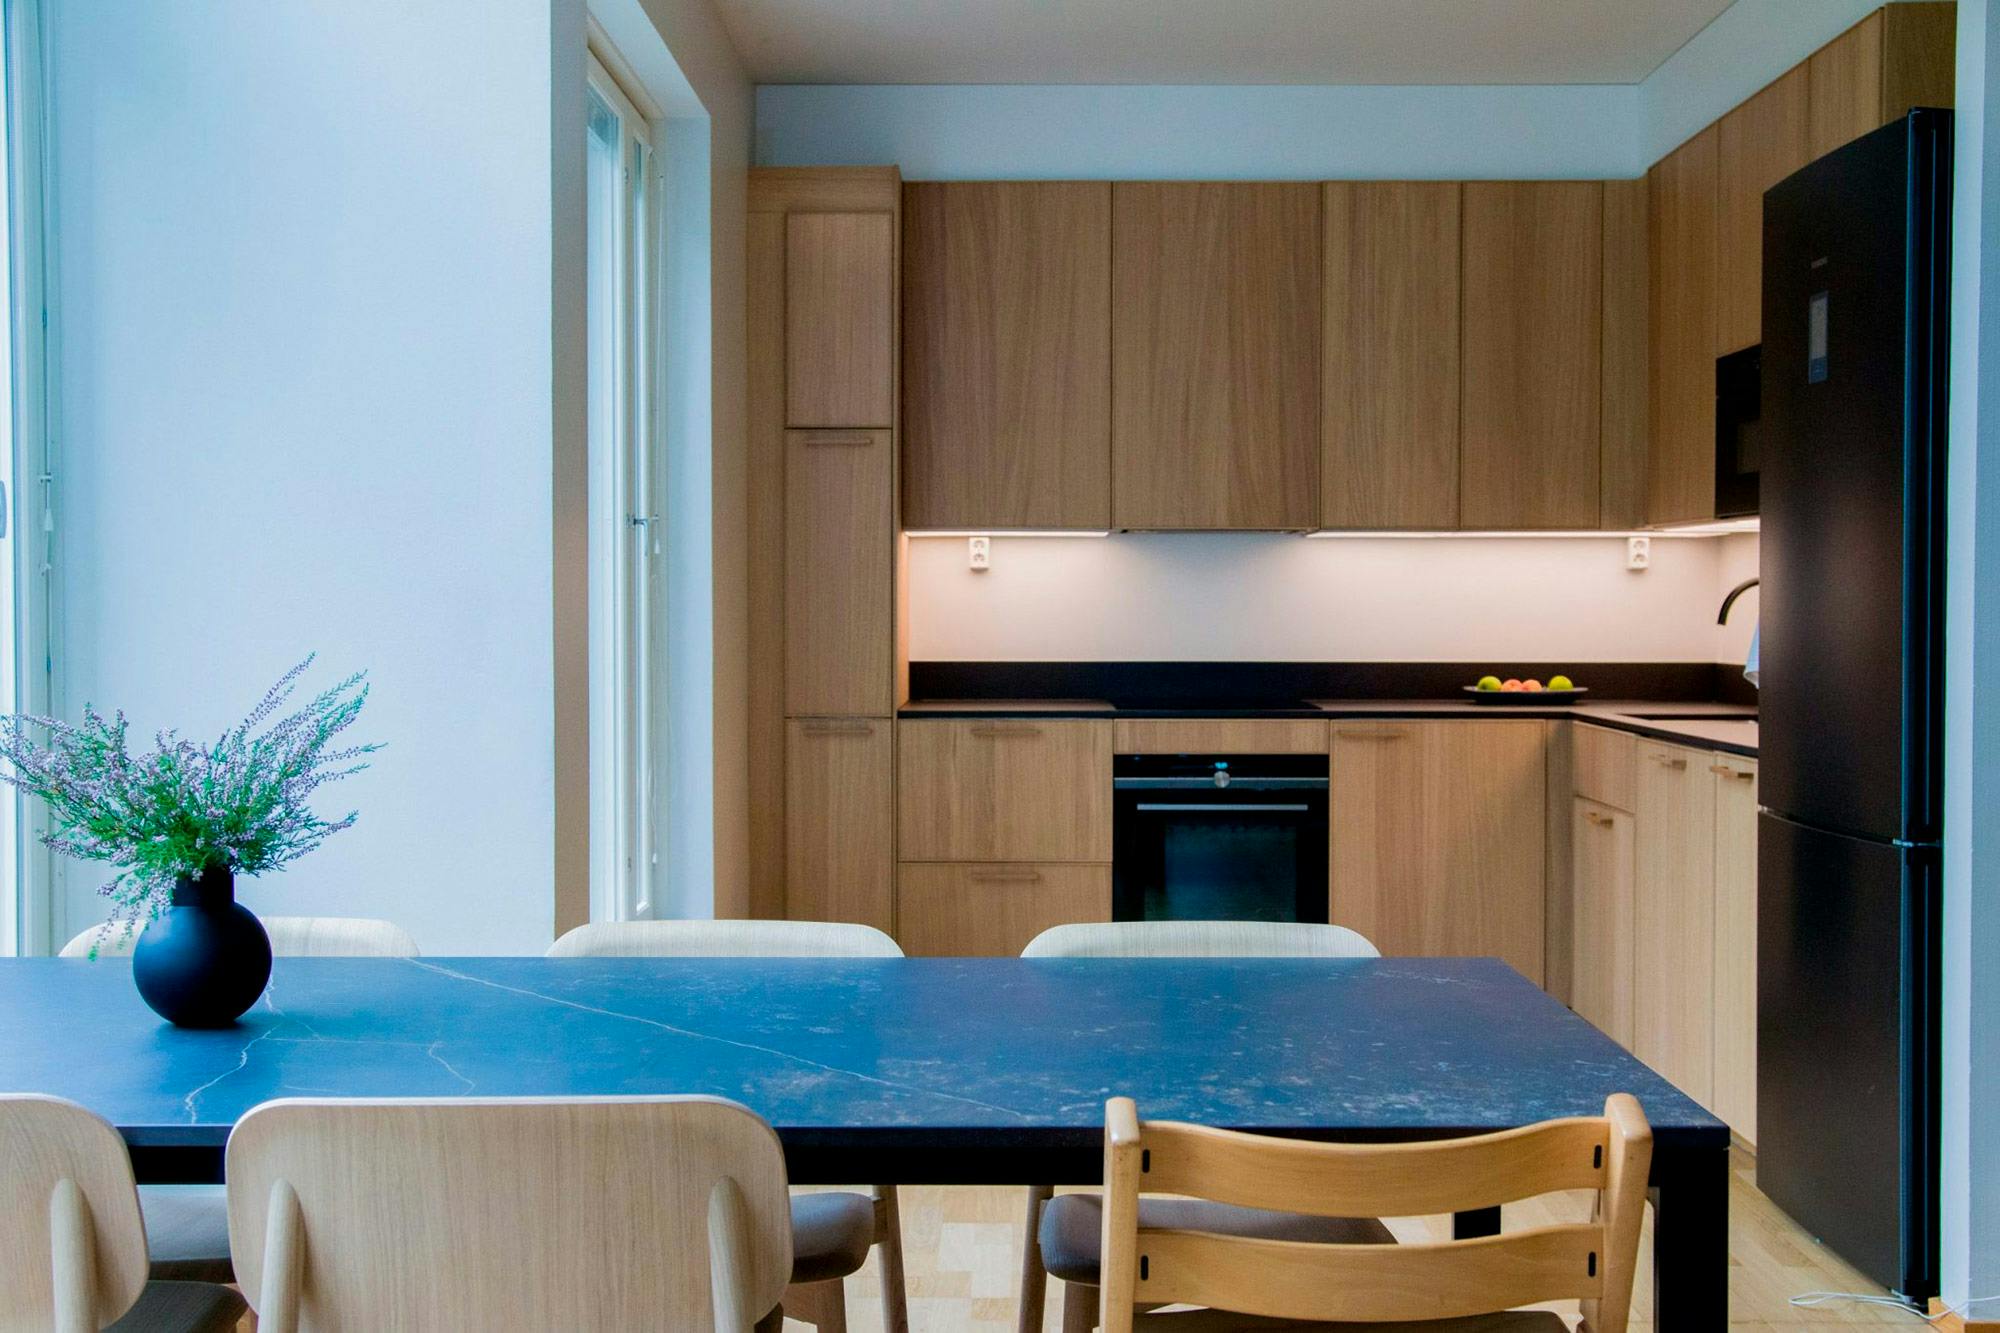 Numero immagine 38 della sezione corrente di DKTN and Silestone enhance the kitchen and bathroom design in a Tokyo home di Cosentino Italia